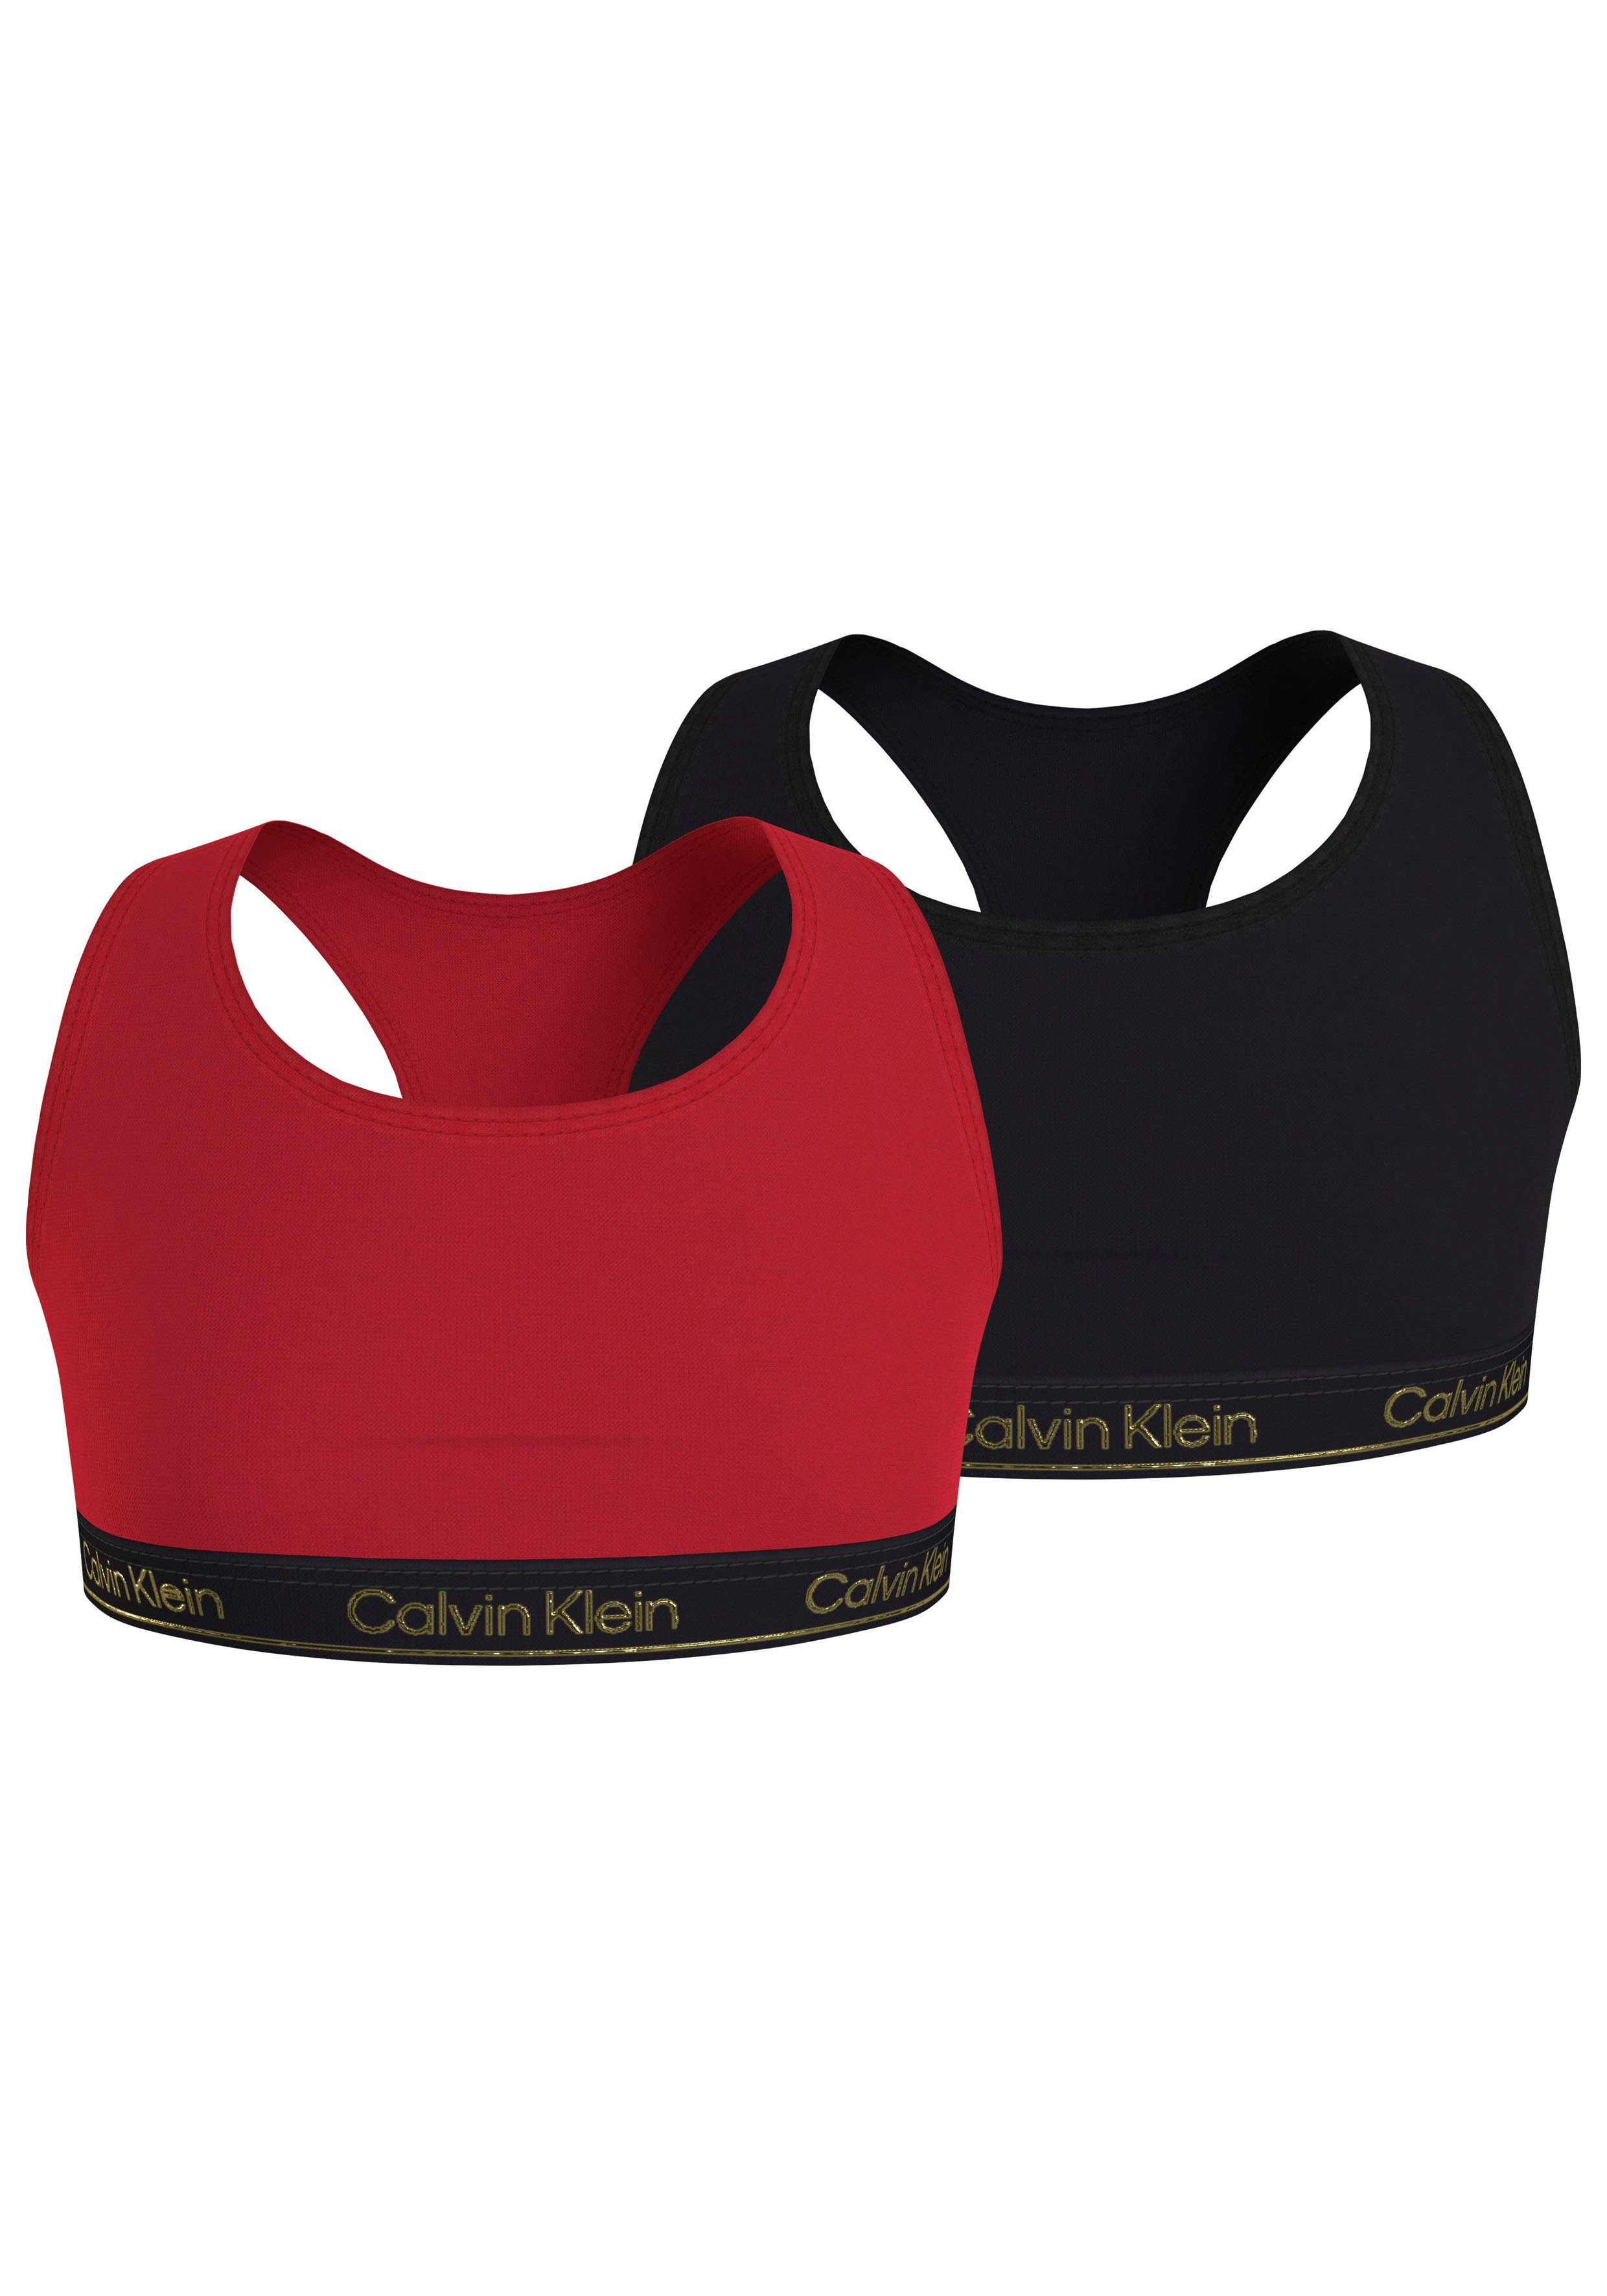 Calvin Klein Underwear Bralette 2PK BRALETTE (Packung, 2er-Pack) in angesagten Farben Redglare/Pvhblack